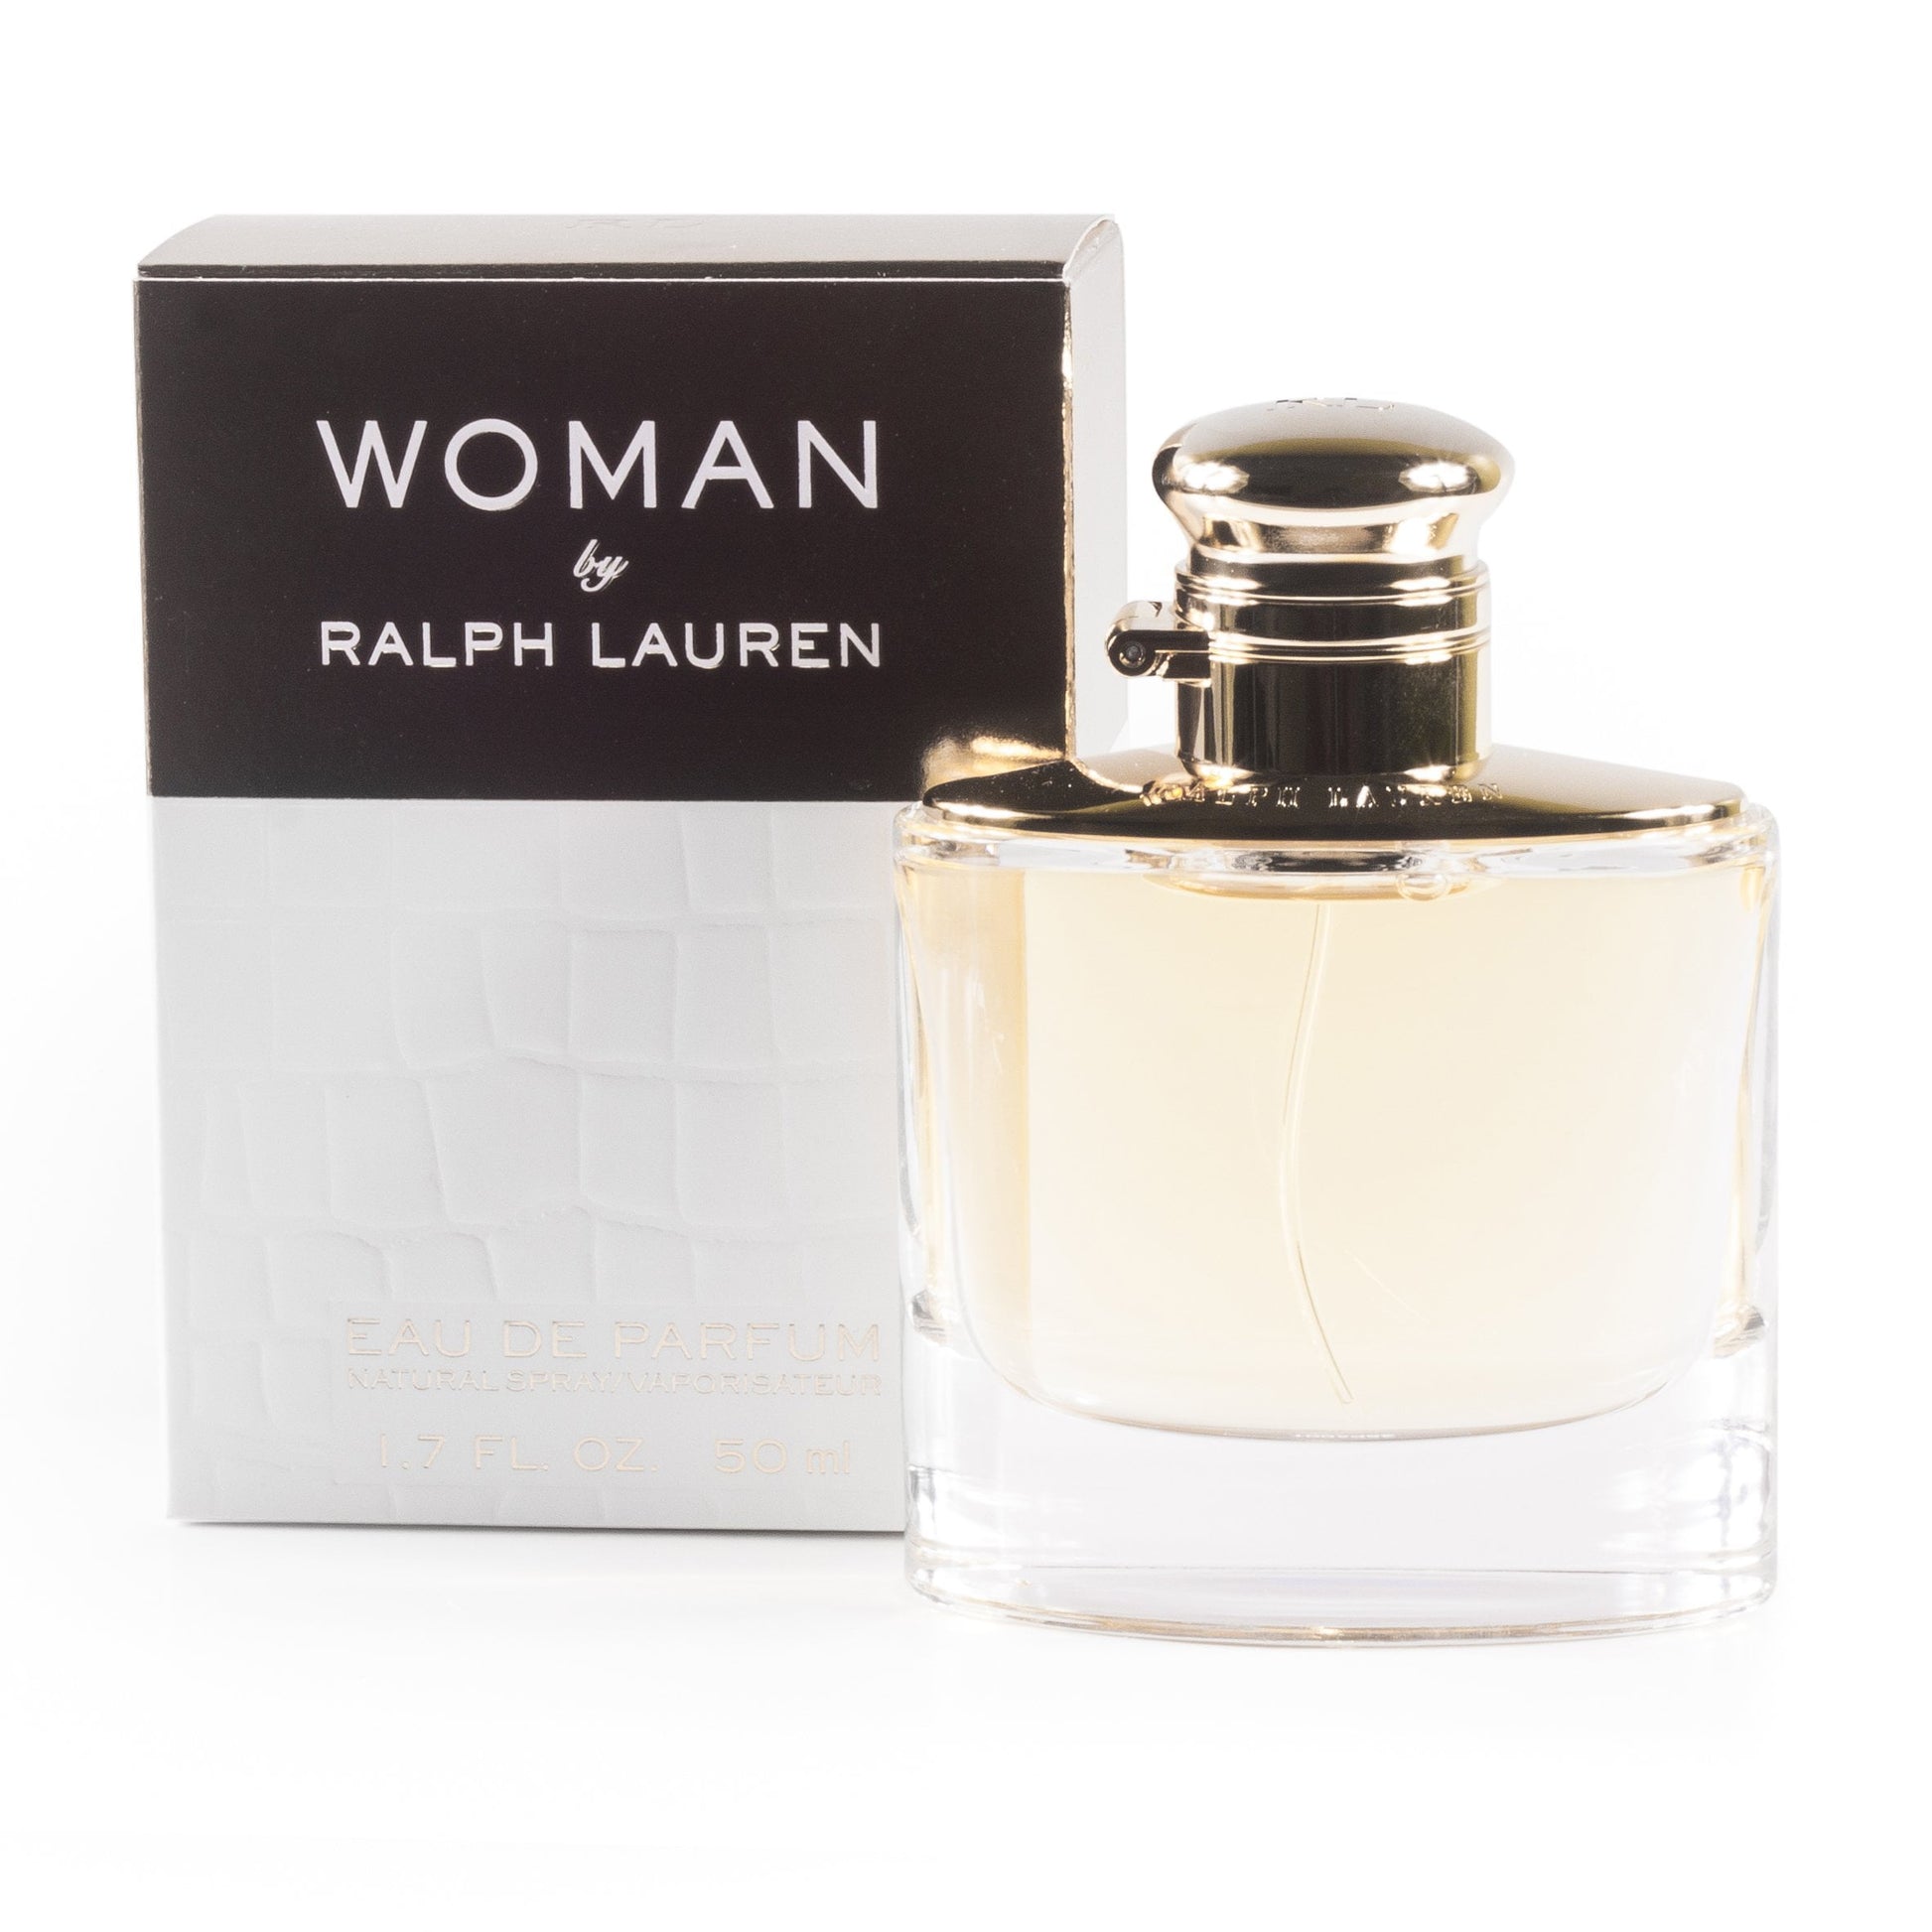 Woman Eau de Parfum Spray for Women by Ralph Lauren, Product image 1